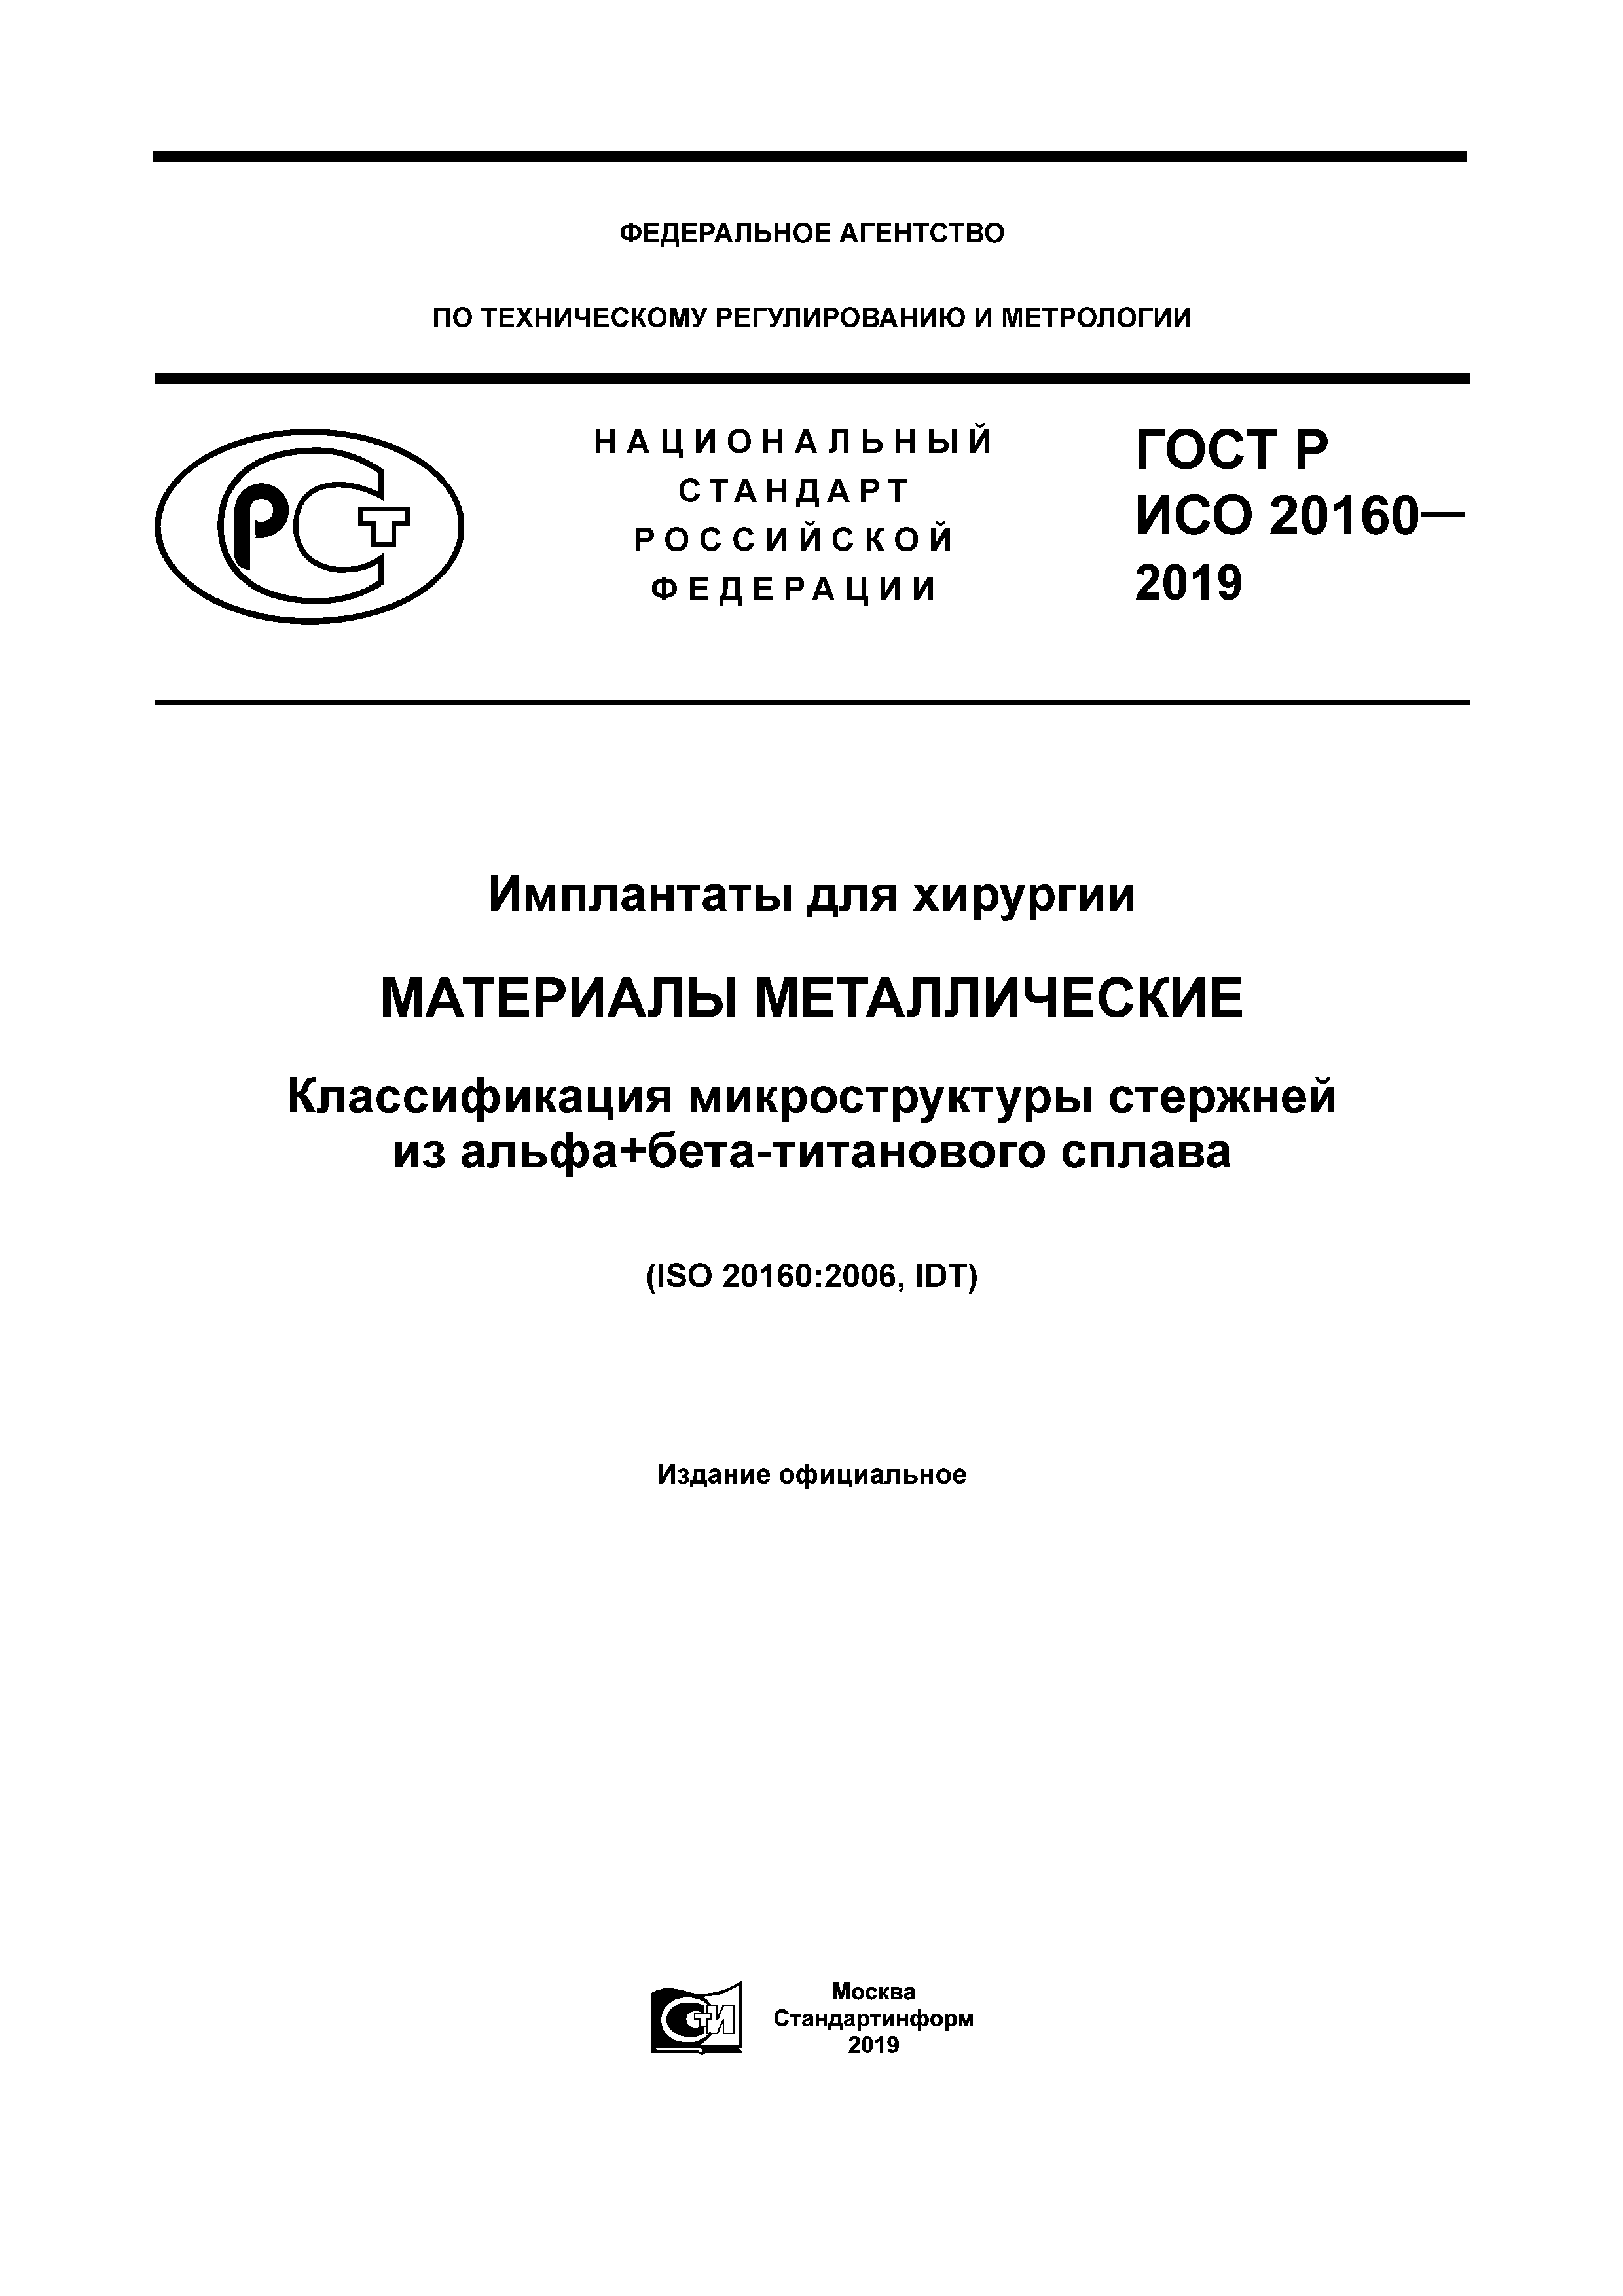 ГОСТ Р ИСО 20160-2019